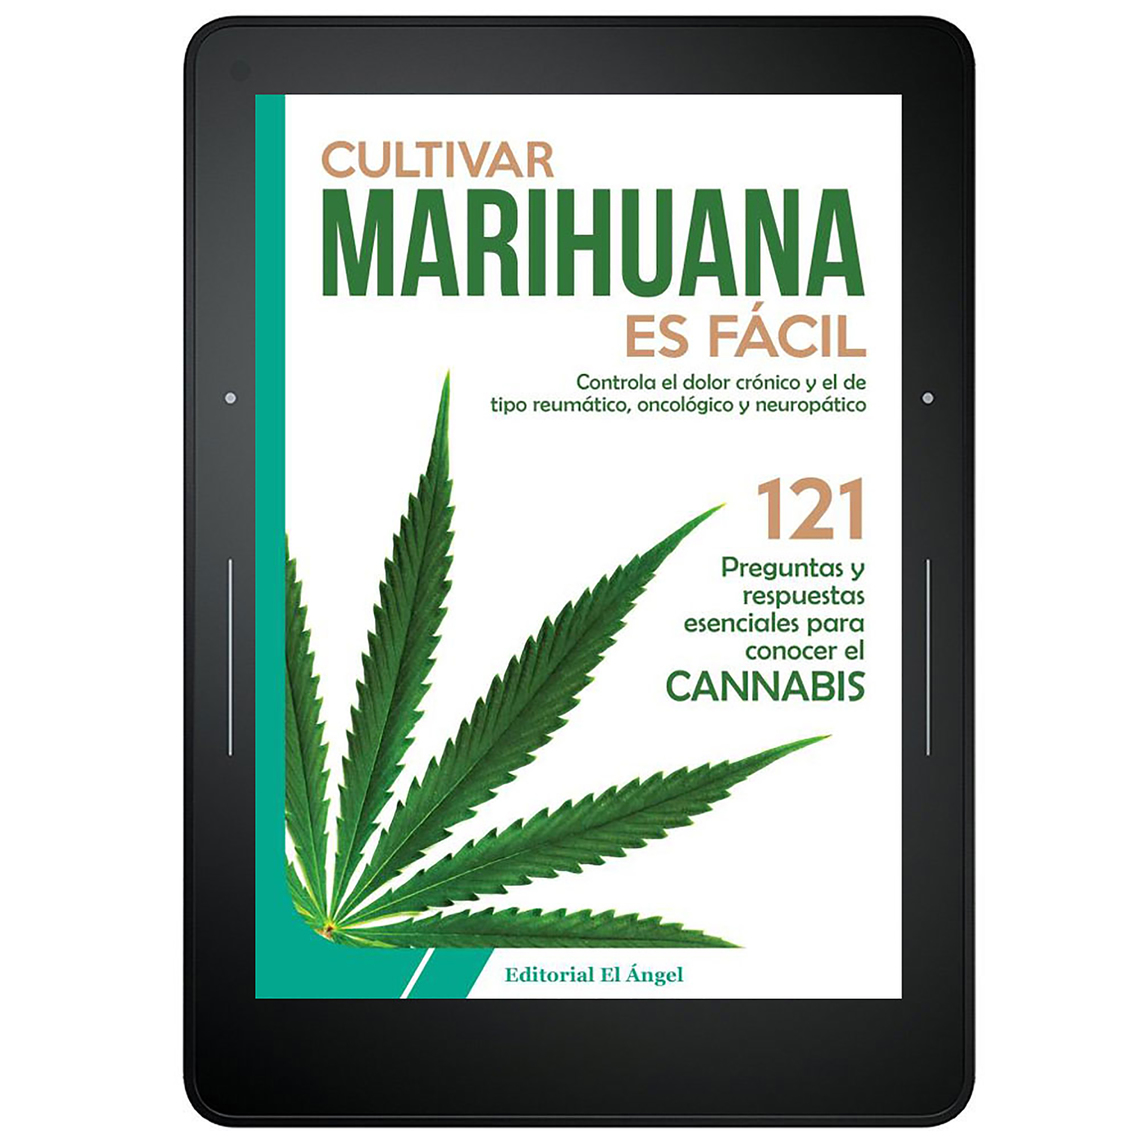 Cultivar Marihuana Es Facil By Varios Autores Book Read Online